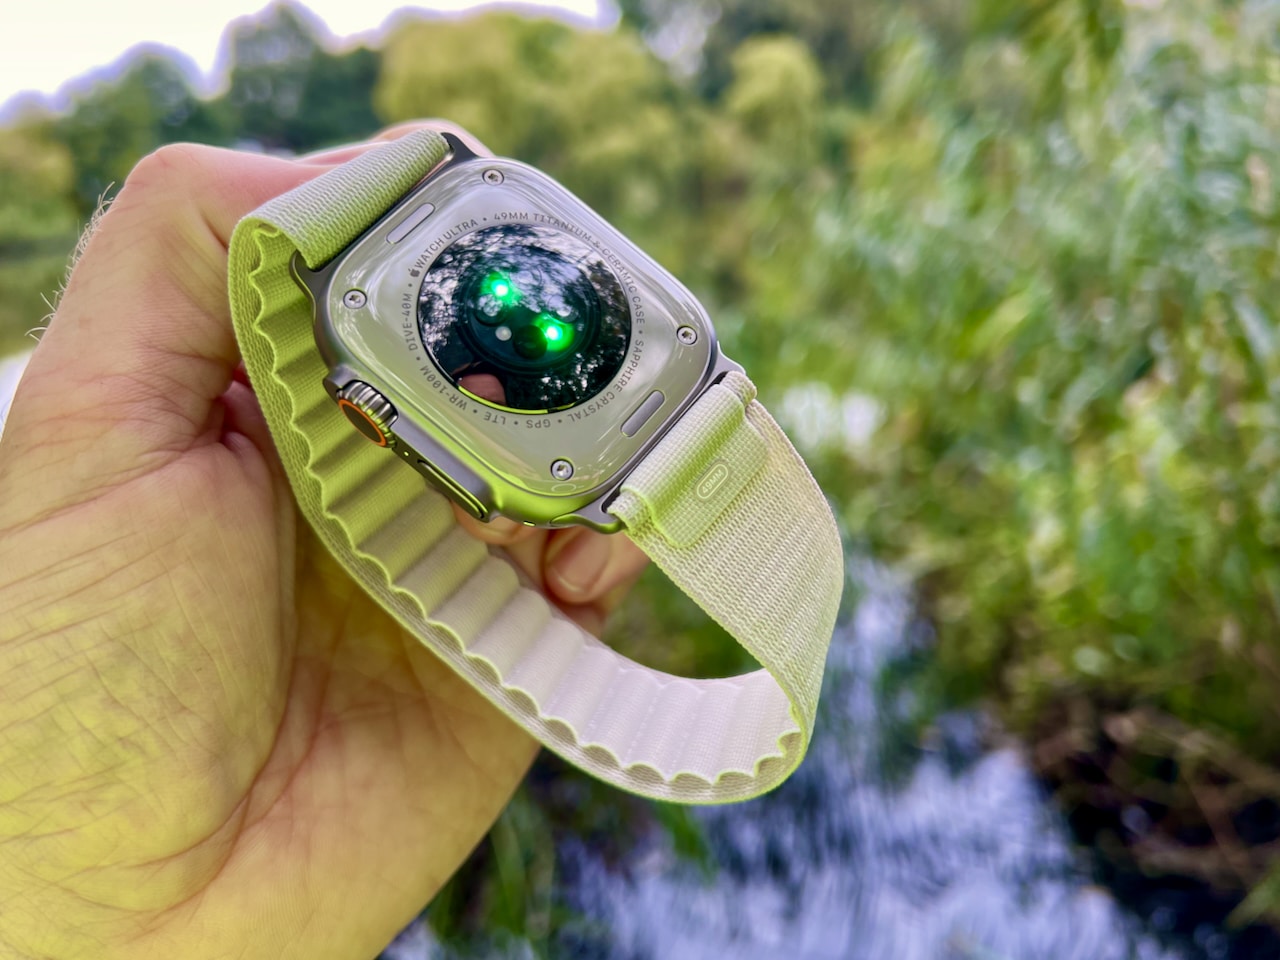 De Apple Watch is het meest persoonlijke apparaat dat Apple ooit ontwikkeld. En hij is ontworpen om je de hele dag te begeleiden. Het prachtige ontwerp, de aanpasbare wijzerplaten en functies voor gezondheidsmonitoring maken het tot een geweldige gadget, een chique modeaccessoire en een handig hulpmiddel tegelijk. Sinds de lancering in 2015 is de Apple Watch uitgegroeid tot een van de meest populaire wearables op de markt. Met elk nieuw toegevoegd model Apple functionaliteit en ontwerp verbeterd en geoptimaliseerd om het een nog nuttiger hulpmiddel en modeaccessoire te maken. De Apple Watch is meer dan alleen een mooi horloge. Het is een state-of-the-art apparaat met veel functies die uw leven gemakkelijker en gezonder zullen maken. Van het monitoren van uw fitness- en gezondheidsgegevens tot hulp bij het navigeren en het ontvangen van meldingen, de Apple Watch is een echte alleskunner.